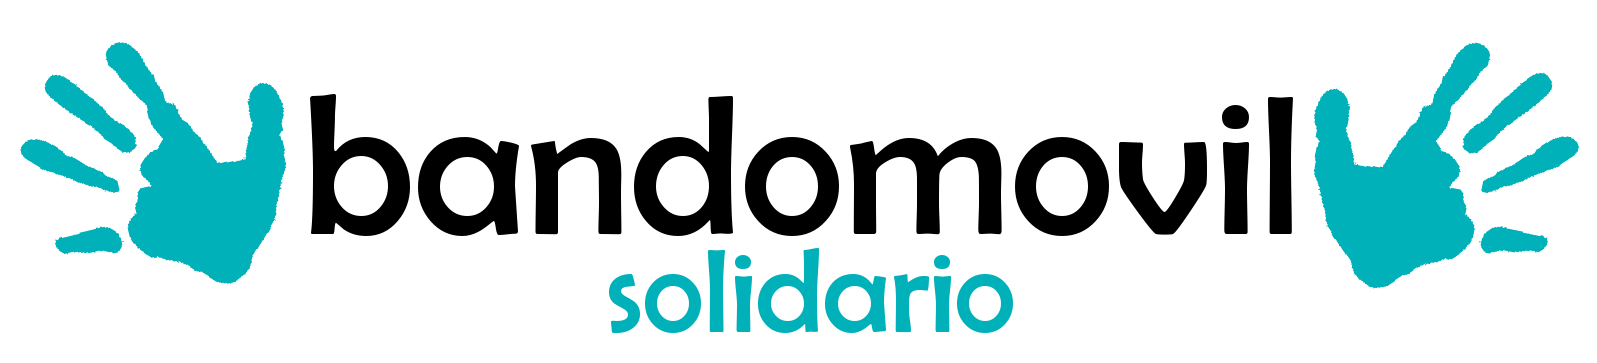 Bandomovil Solidario